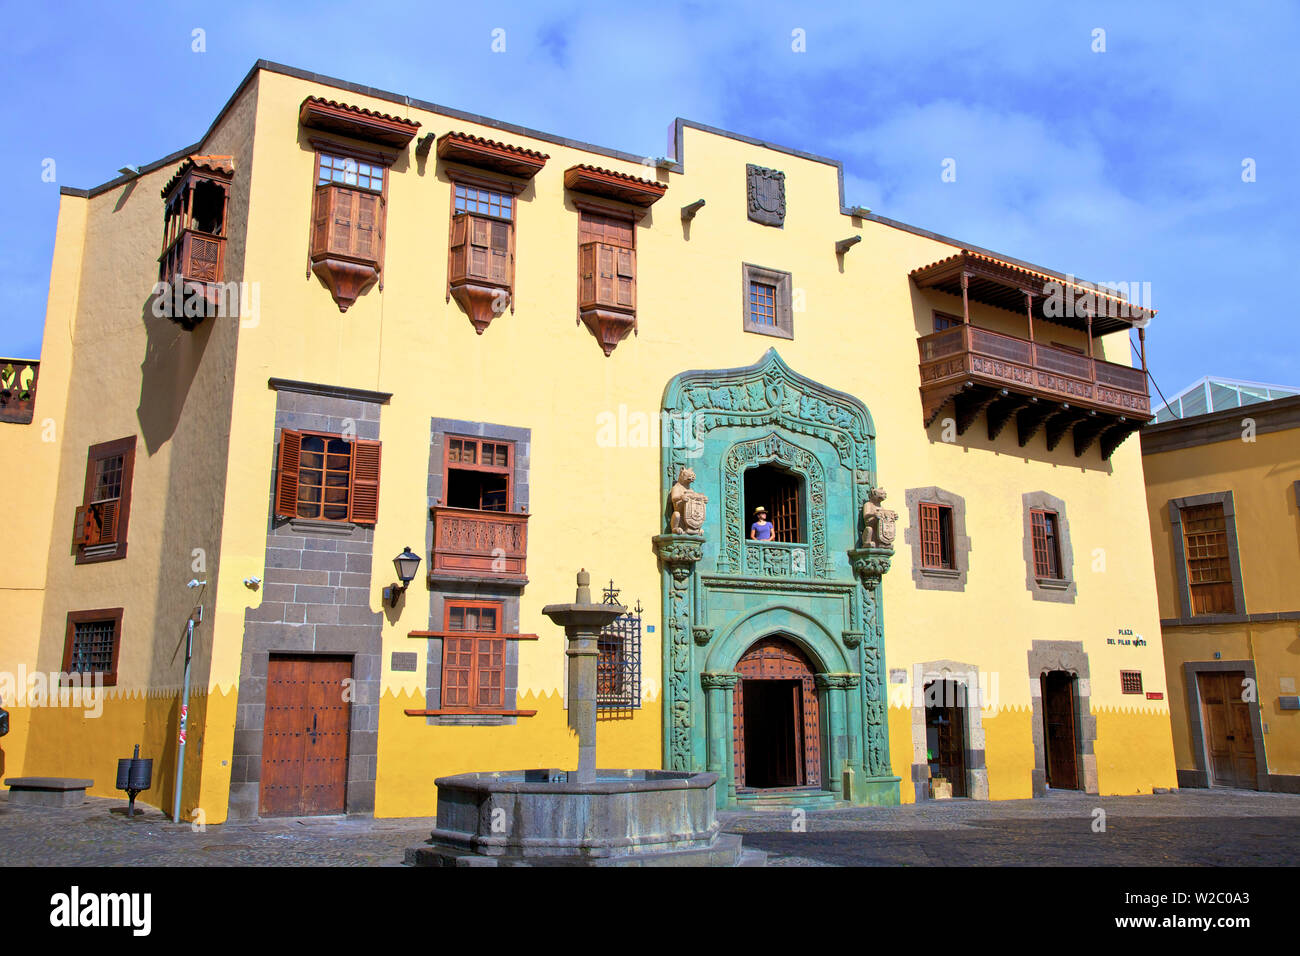 Casa de Colon, Vegueta Old Town, Las Palmas de Gran Canaria, Gran Canaria, Canary Islands, Spain, Atlantic Ocean, Europe Stock Photo